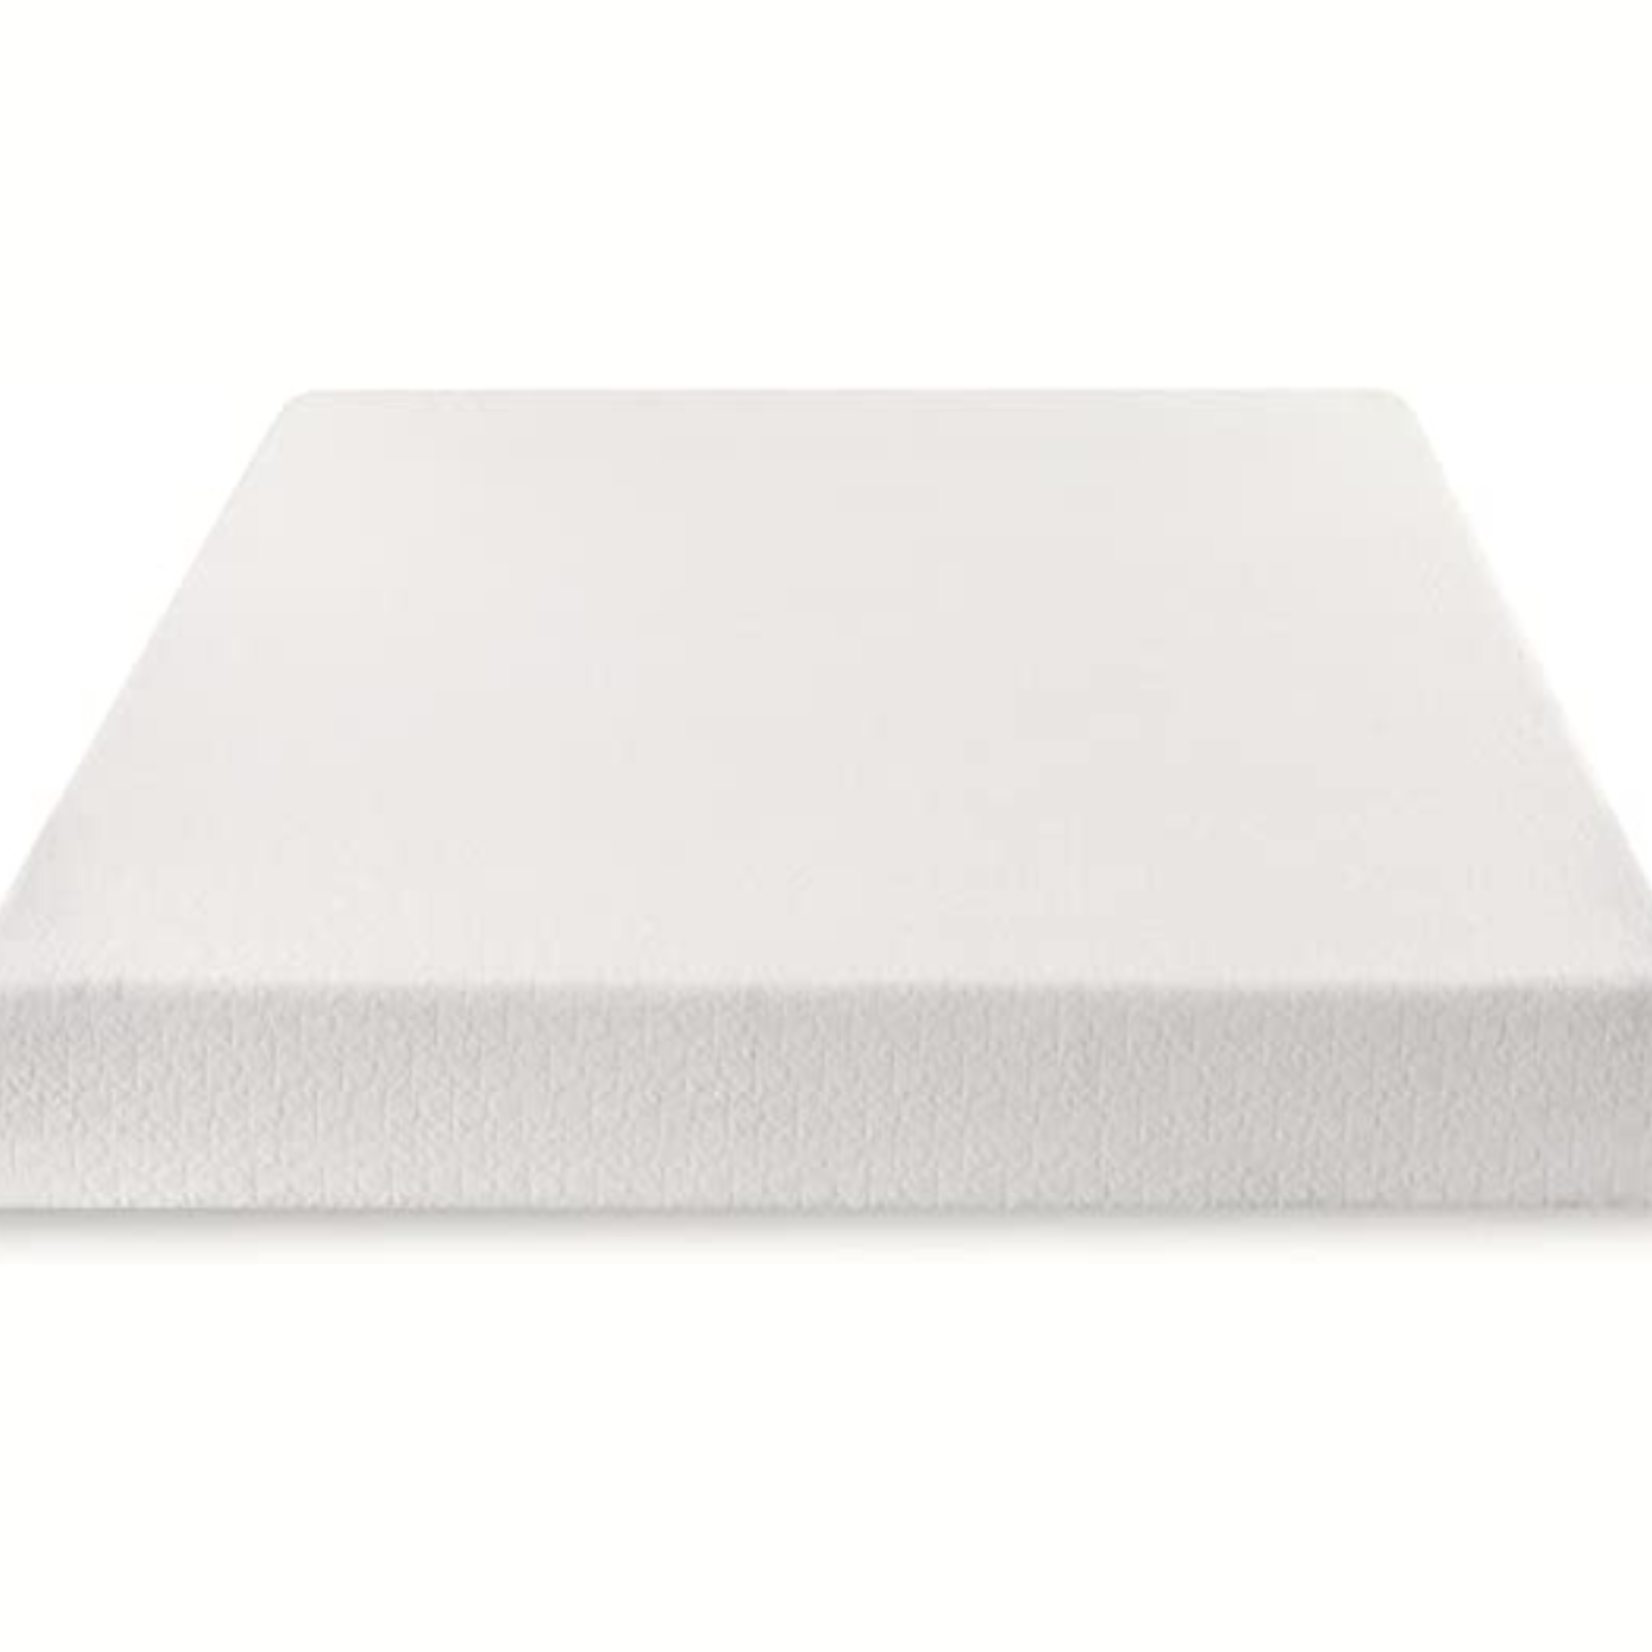 Best Price Mattress Topper- Memory Foam- 8 Inch- Twin XL